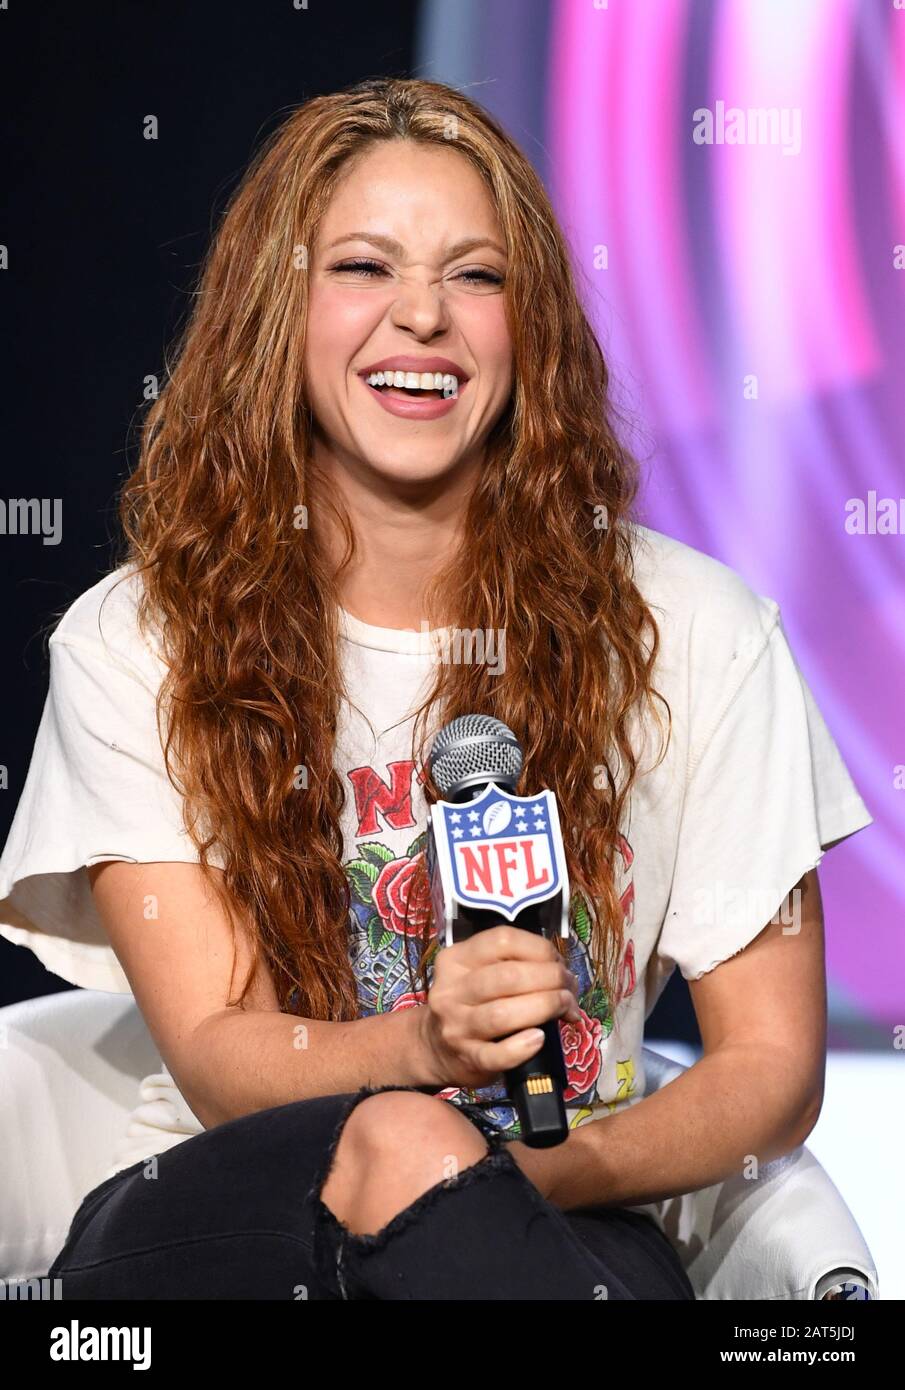 Miami, États-Unis. 30 janvier 2020. Shakira parle aux médias lors de la  conférence de presse du Super Bowl LIV Pepsi Halftime Show, le jeudi 30  janvier 2020 à Miami, en Floride. Shakira